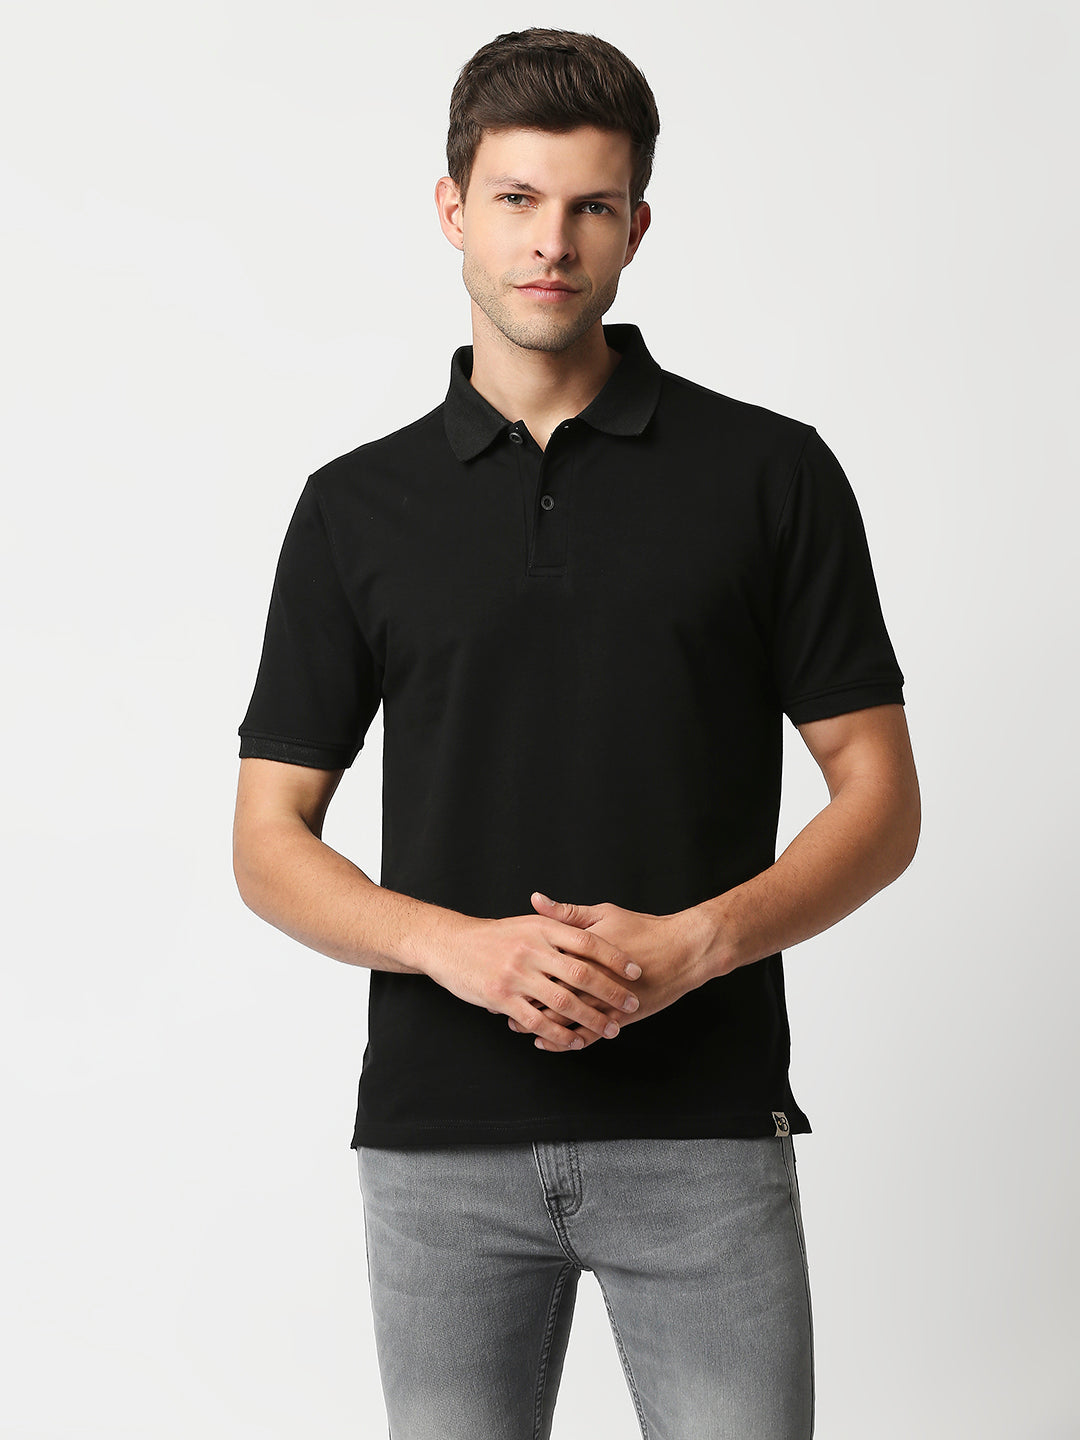 Buy Blamblack Men's Polo Plain Black color T shirt